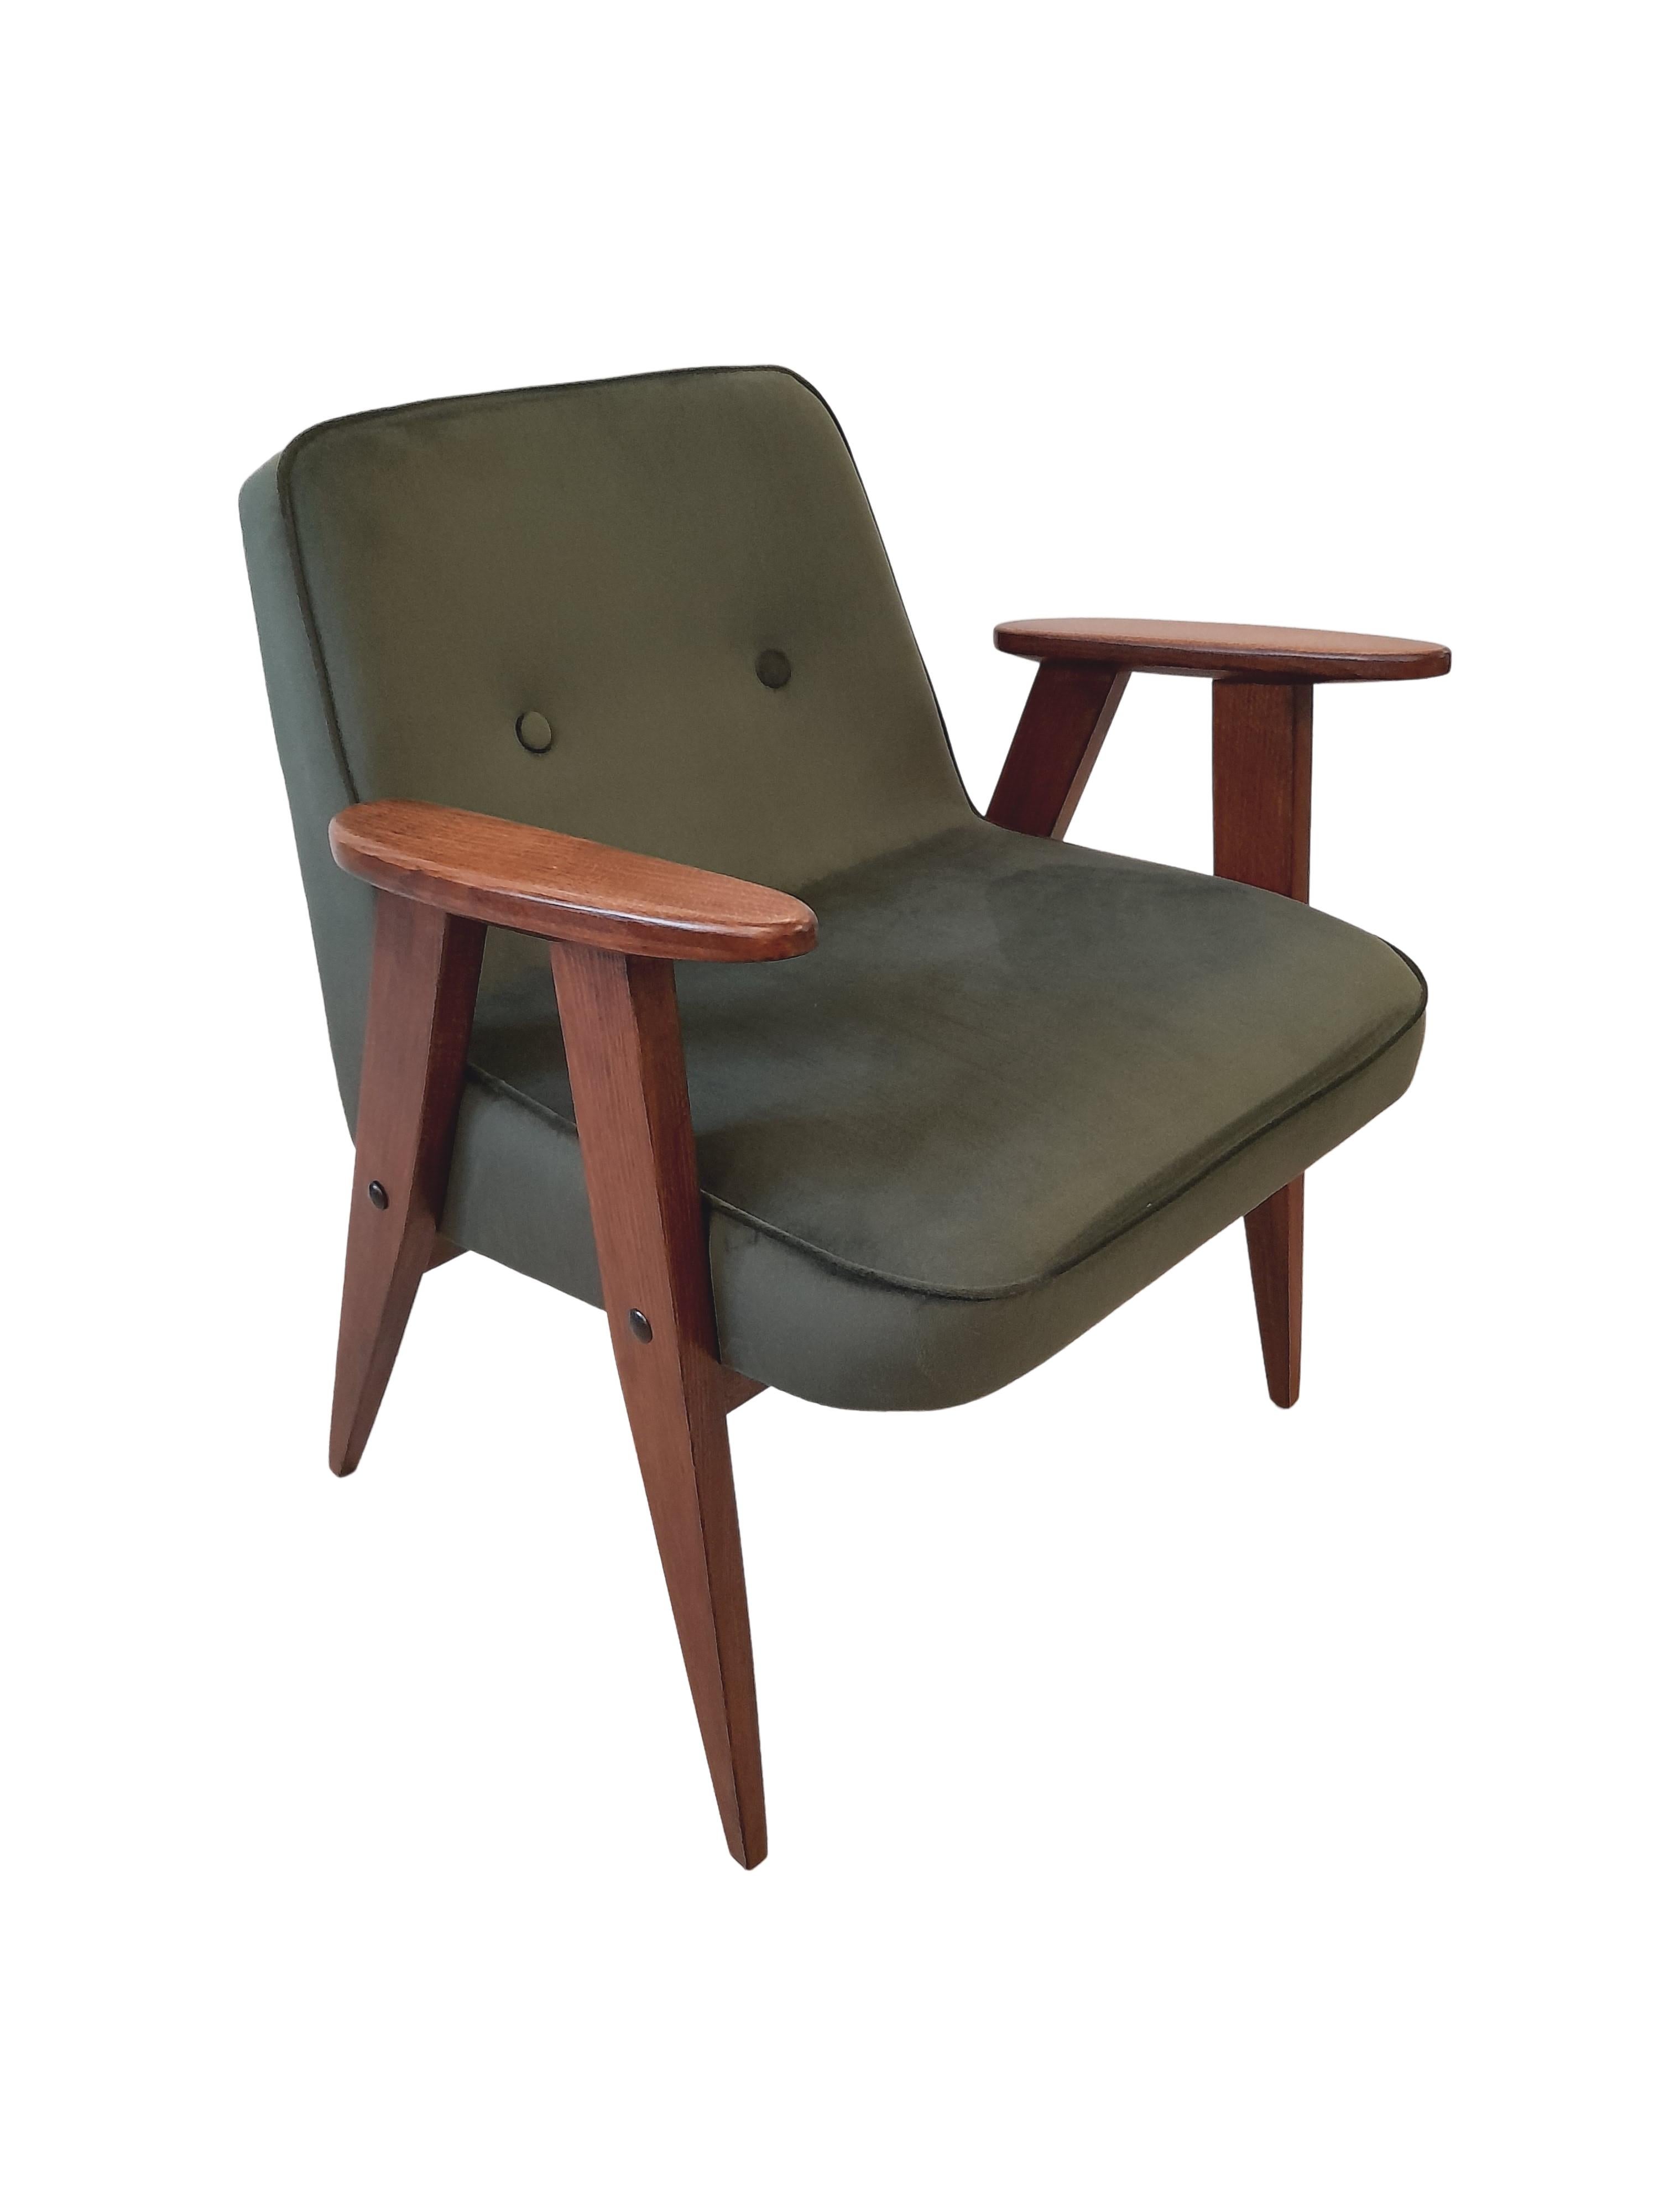 Sessel aus grünem Samt, Modell 366, von Józef Chierowski, 1960er Jahre (Polnisch)